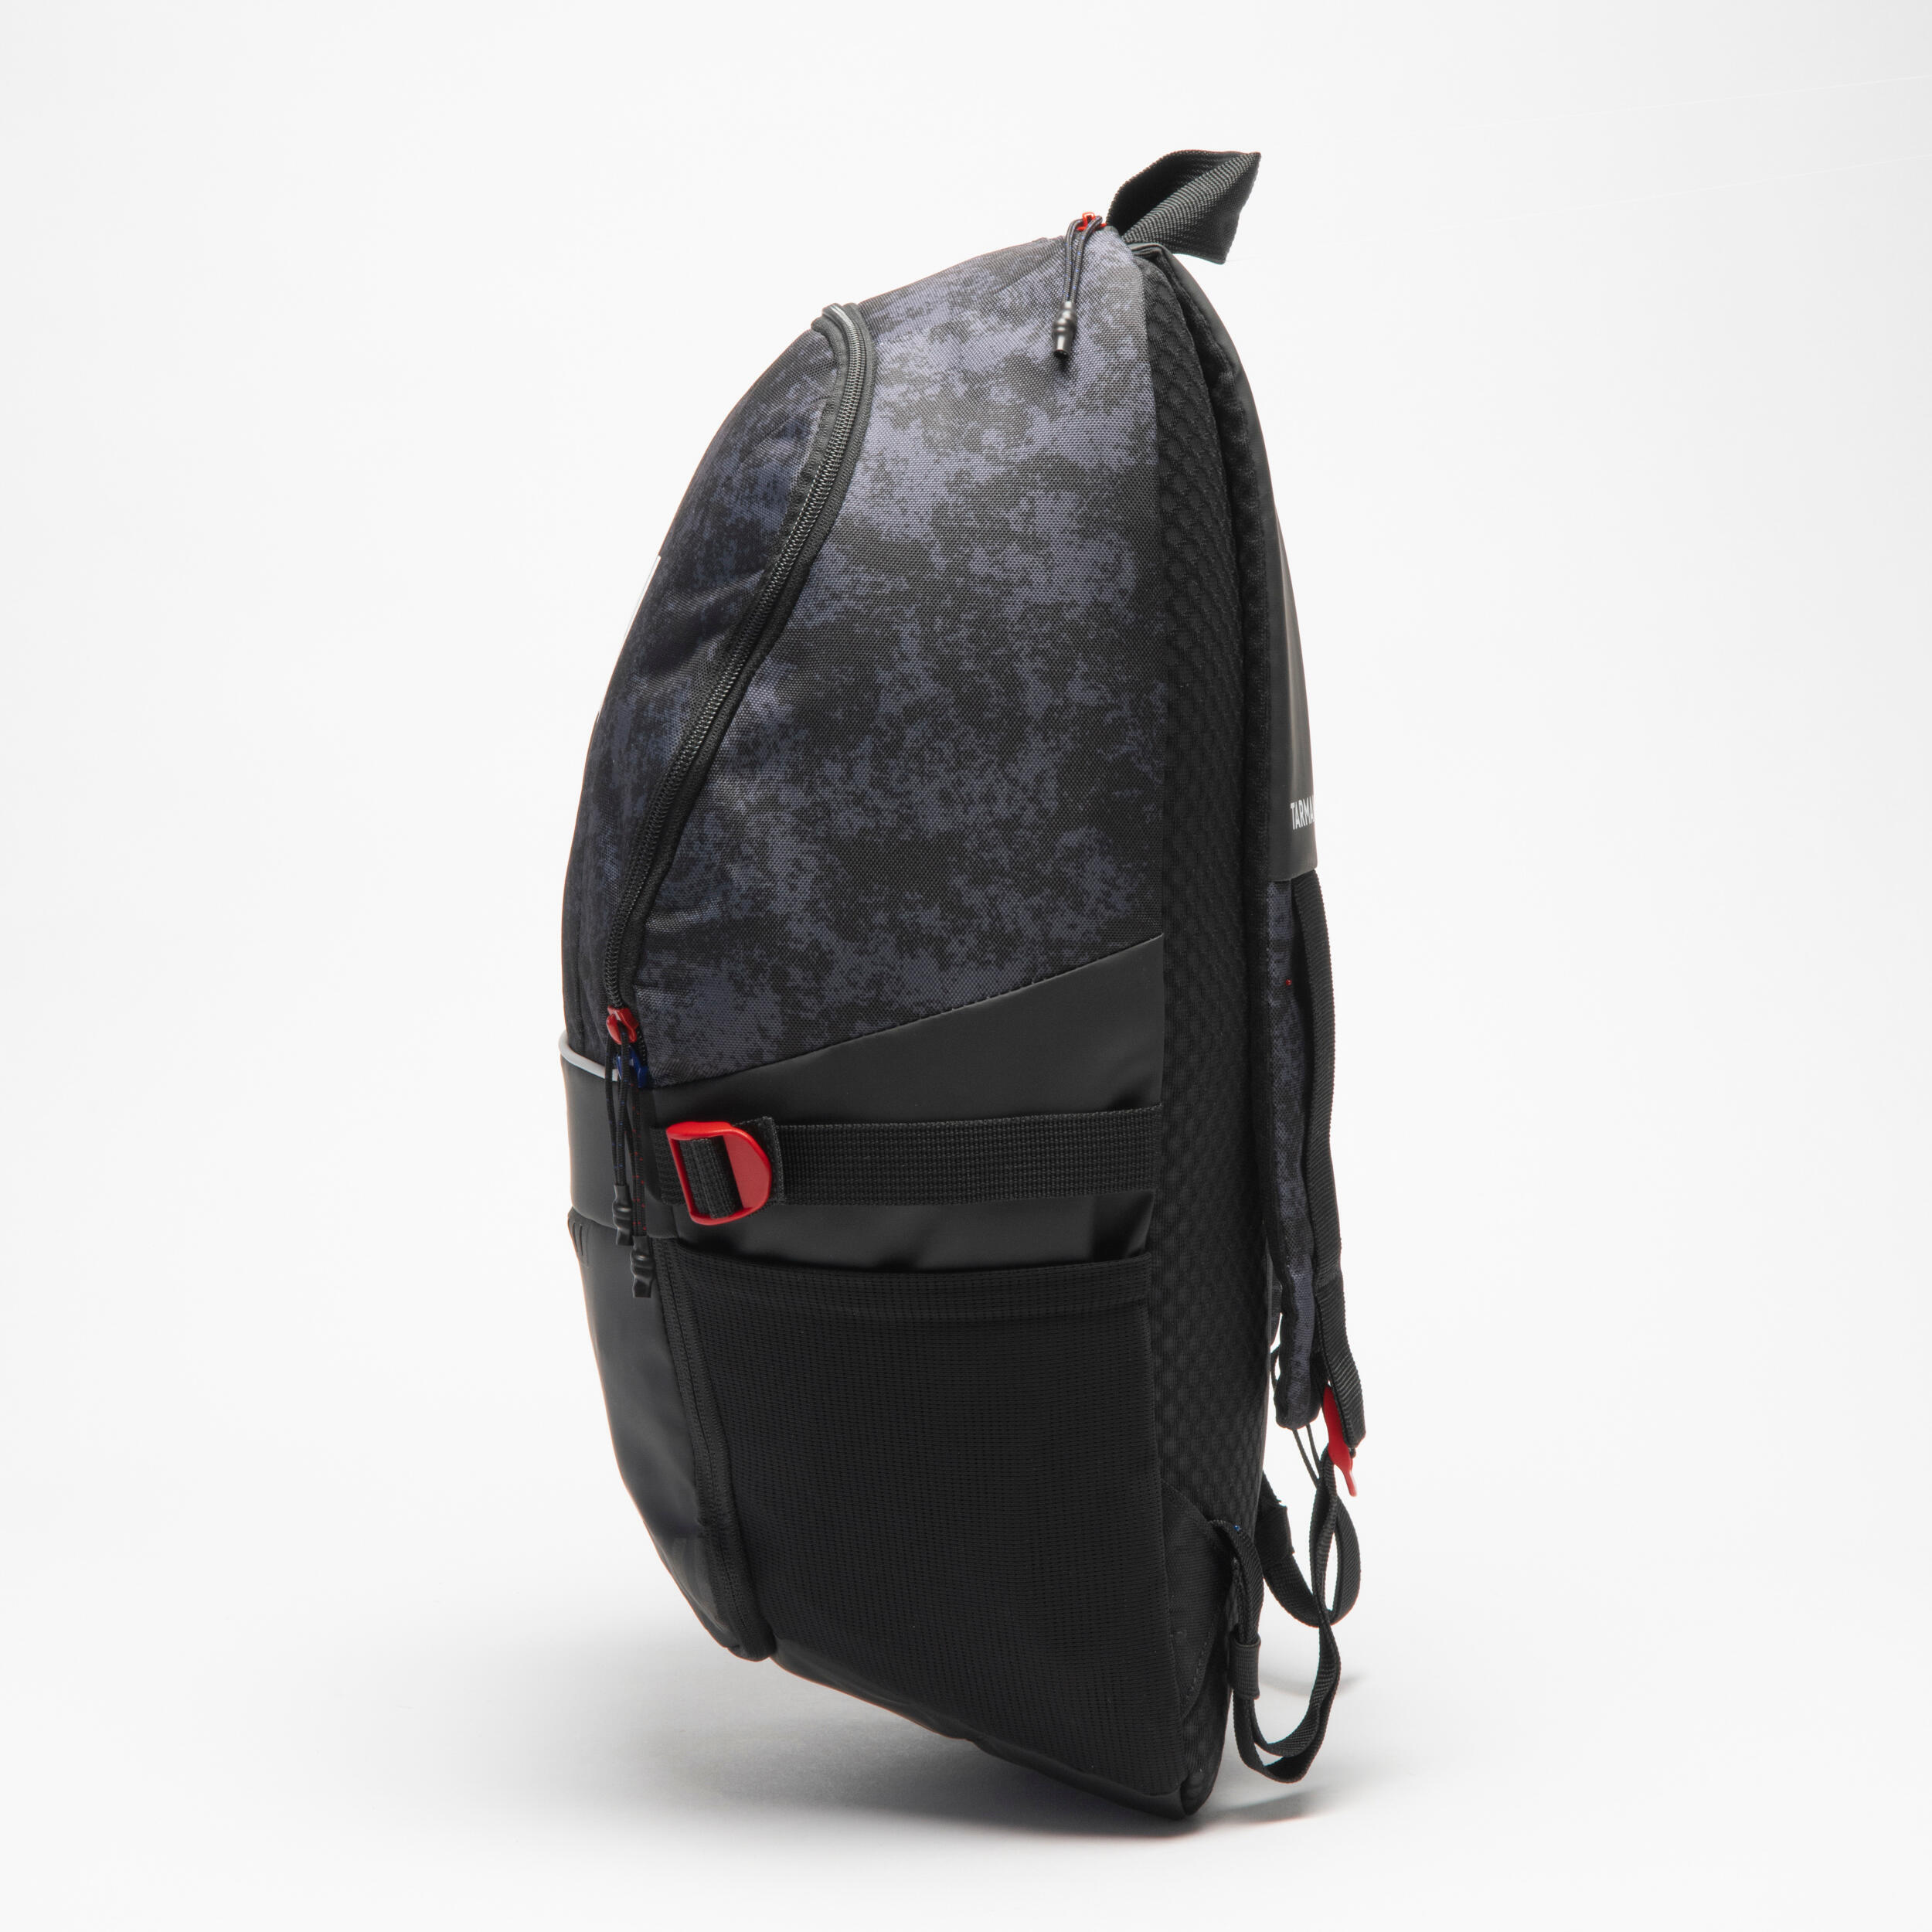 Basketball Backpack 25 L NBA 500 - Black 4/13